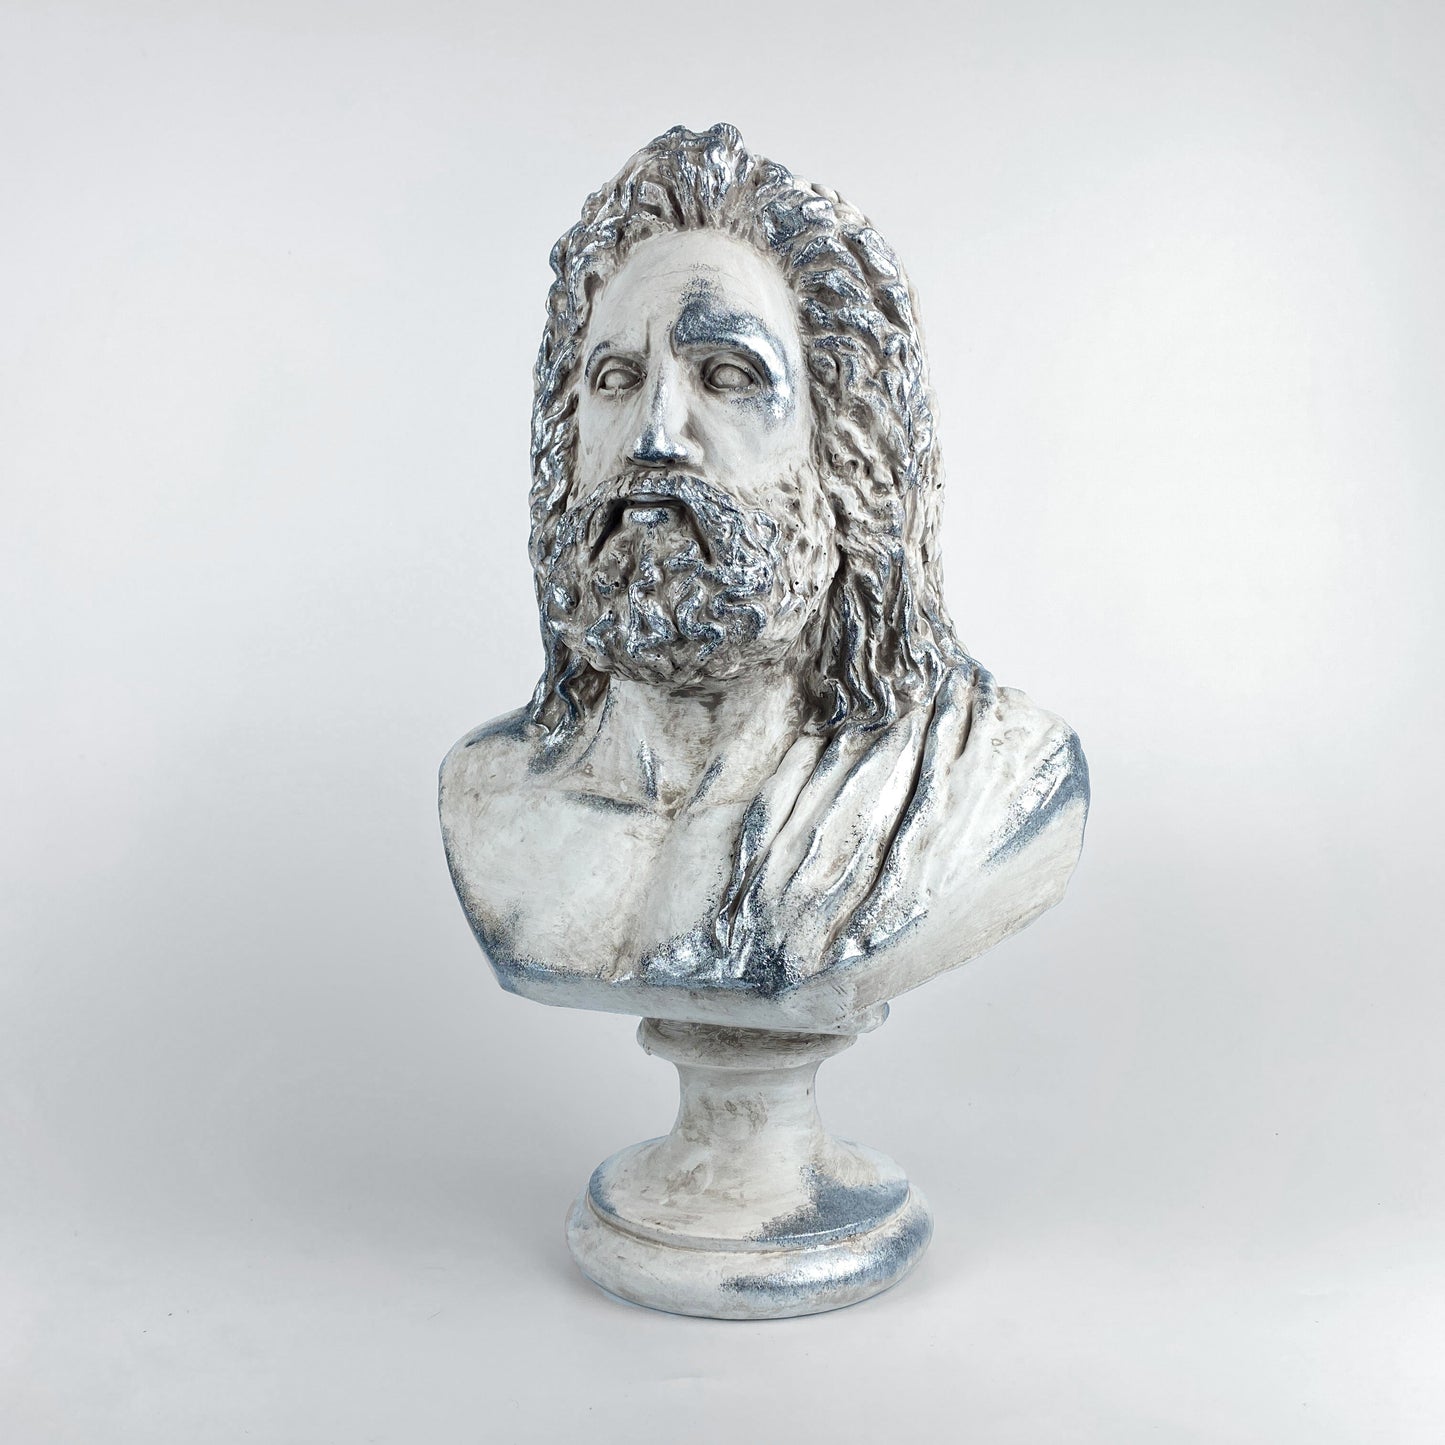 Poseidon and Zeus 'Silver Moss' Pop Art Sculpture Set, Modern Home Decors